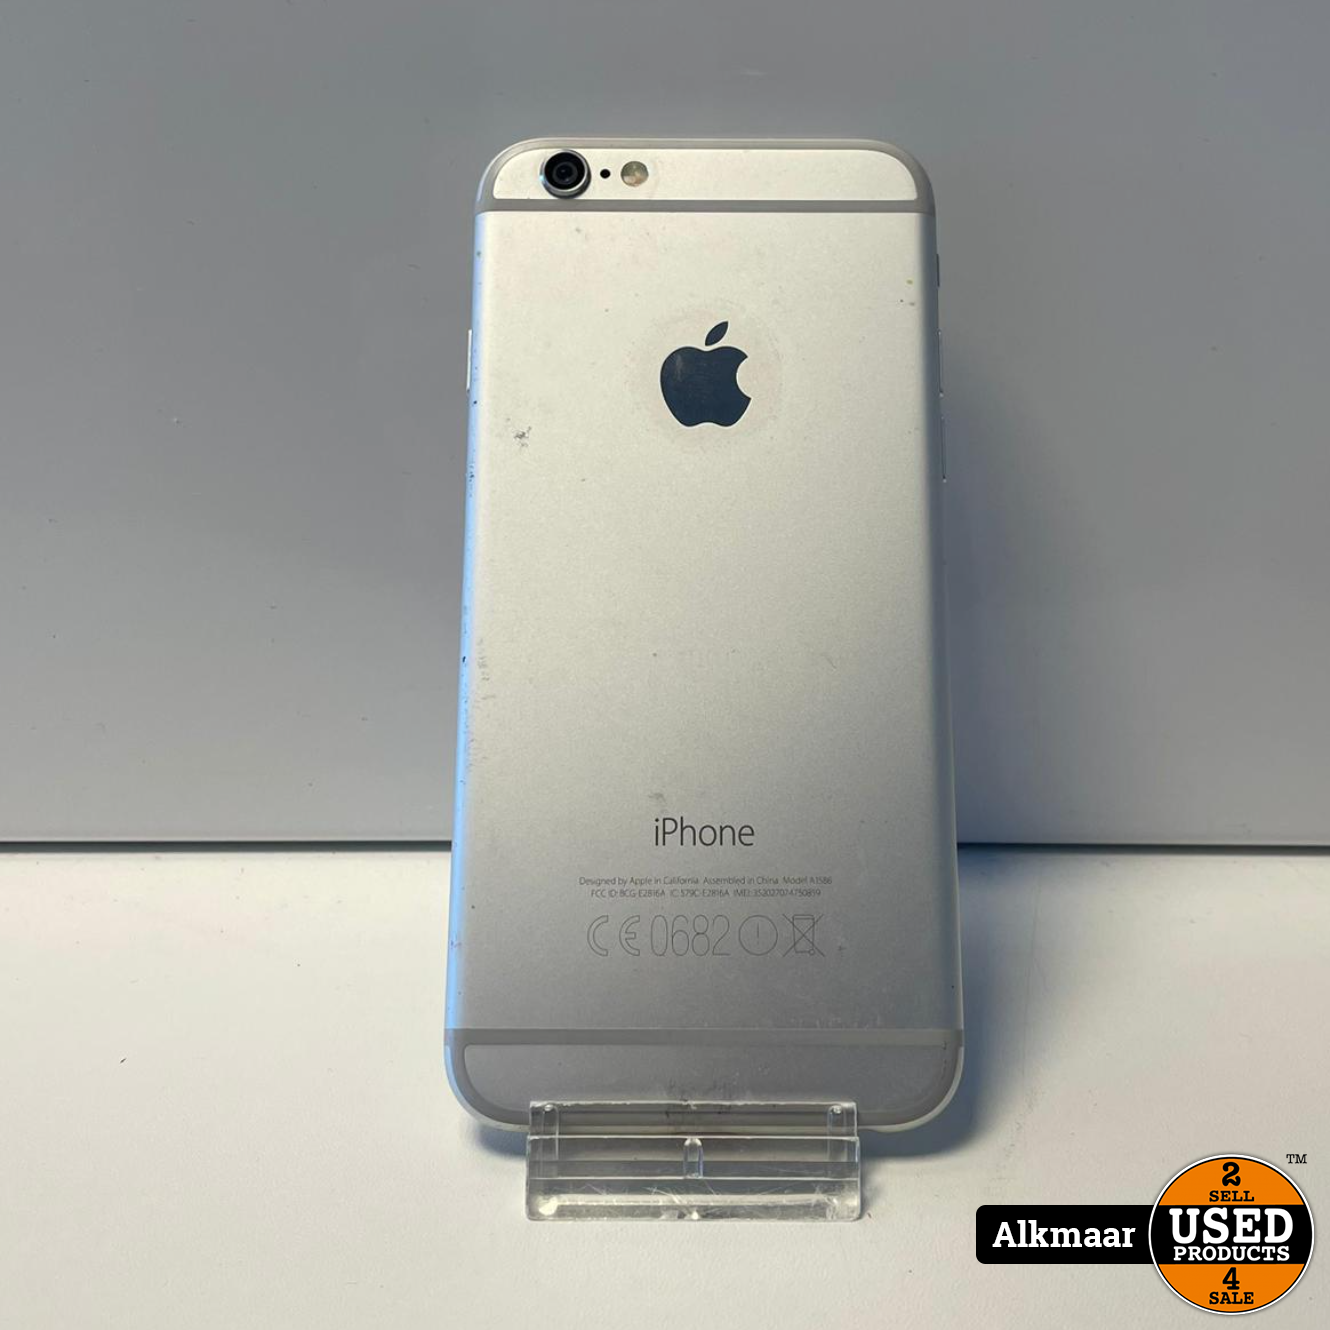 handig Vol Zeemeeuw Apple iPhone 6S 64GB Zilver | 85% | Nette staat - Used Products Alkmaar